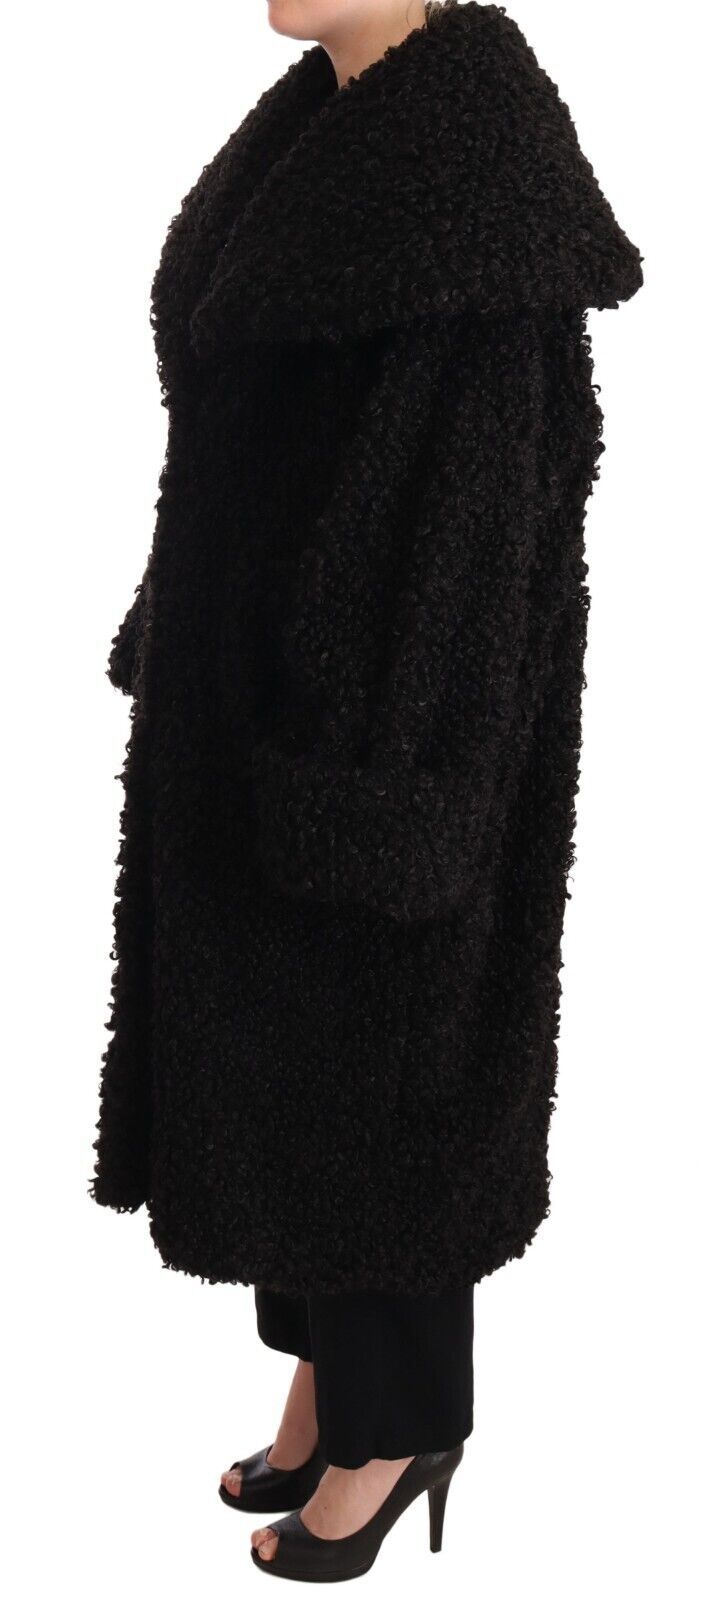 Elegant Black Fur Cape Trench Coat